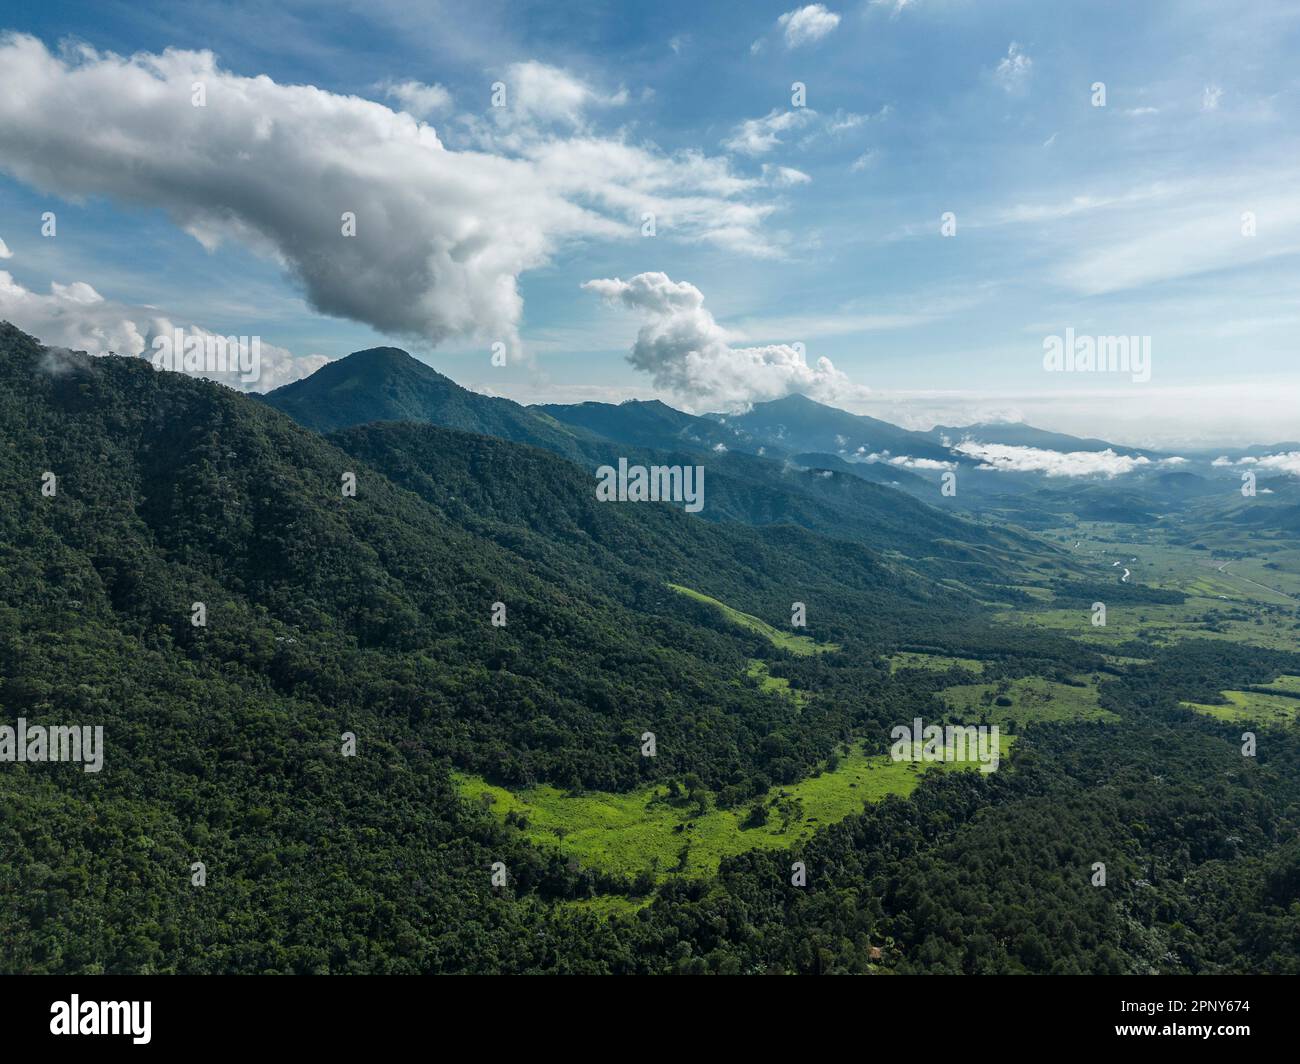 Belle vue aérienne sur les montagnes et les nuages de la forêt verte de l'atlantique Banque D'Images